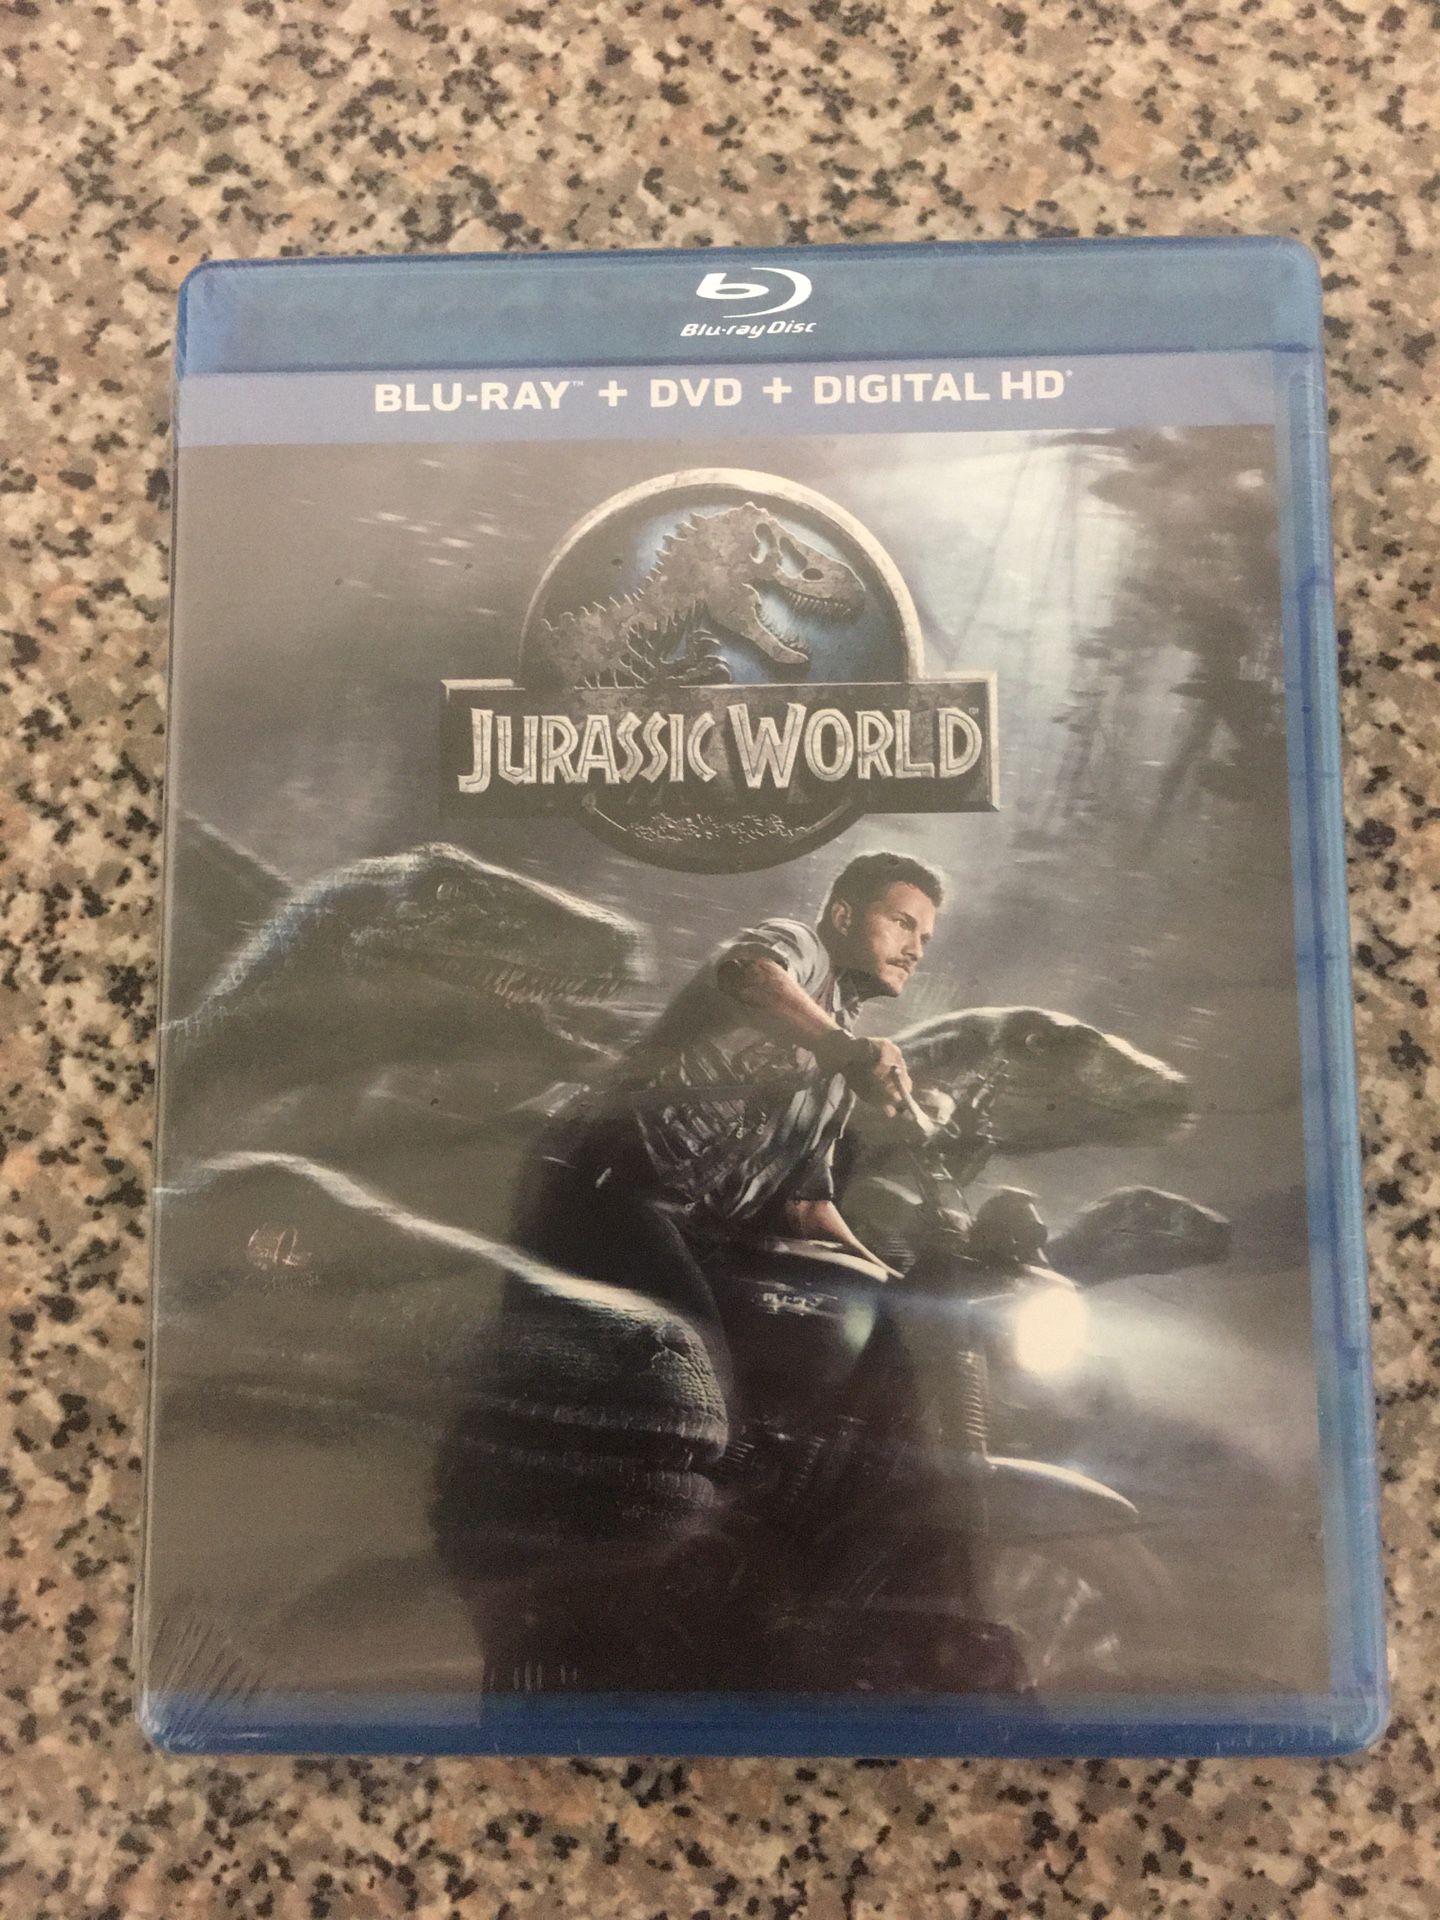 Jurassic World BluRay/DVD combo (unopened)